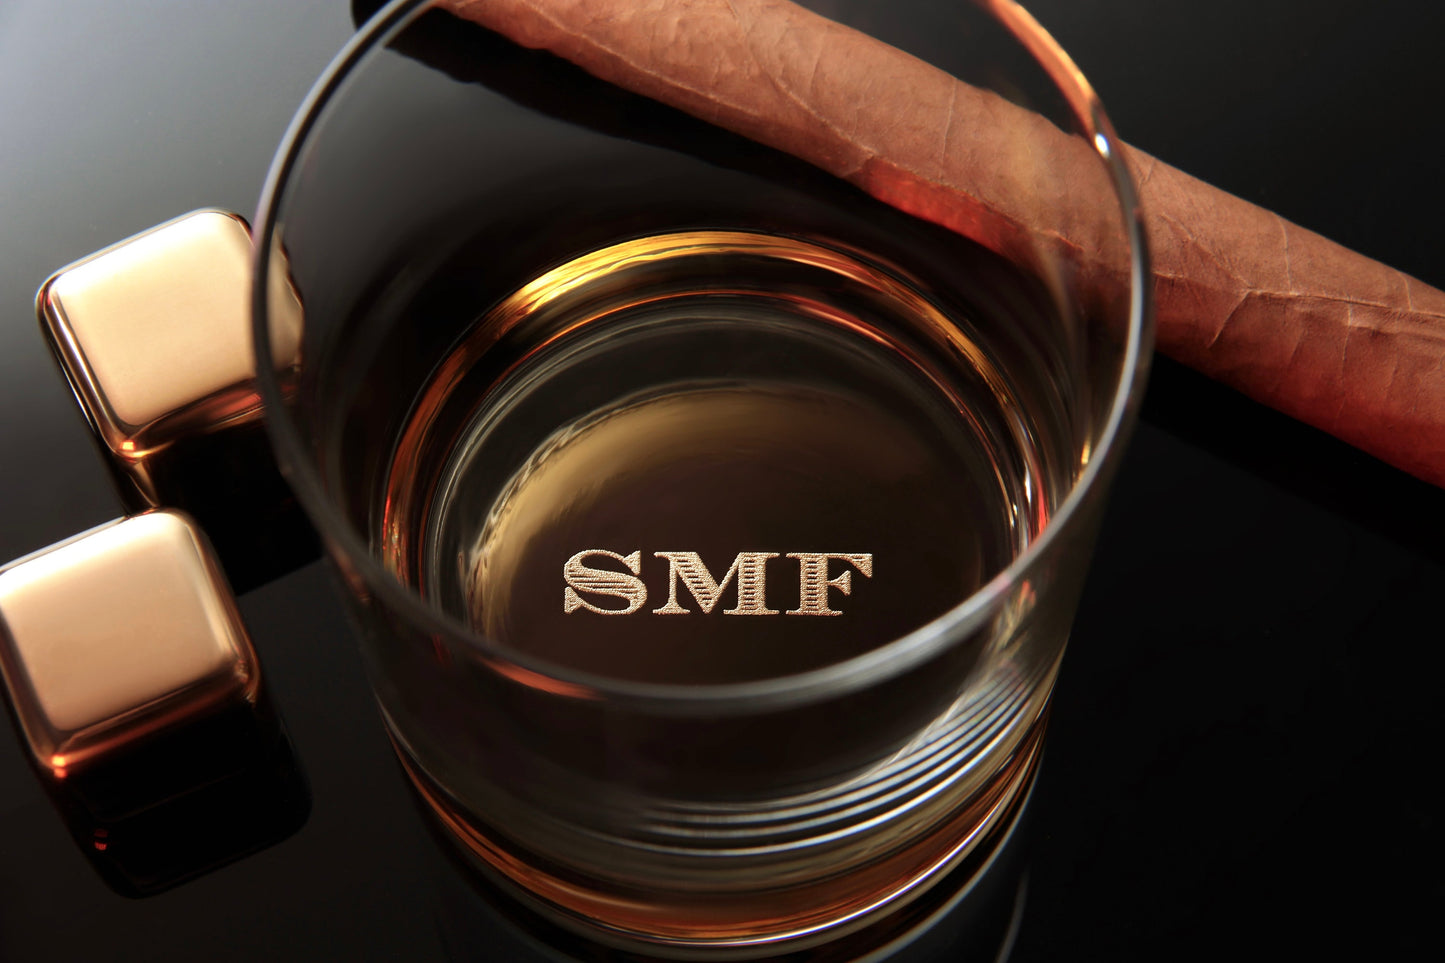 Personalisierte Whiskey-Glas Geschenk für Männer